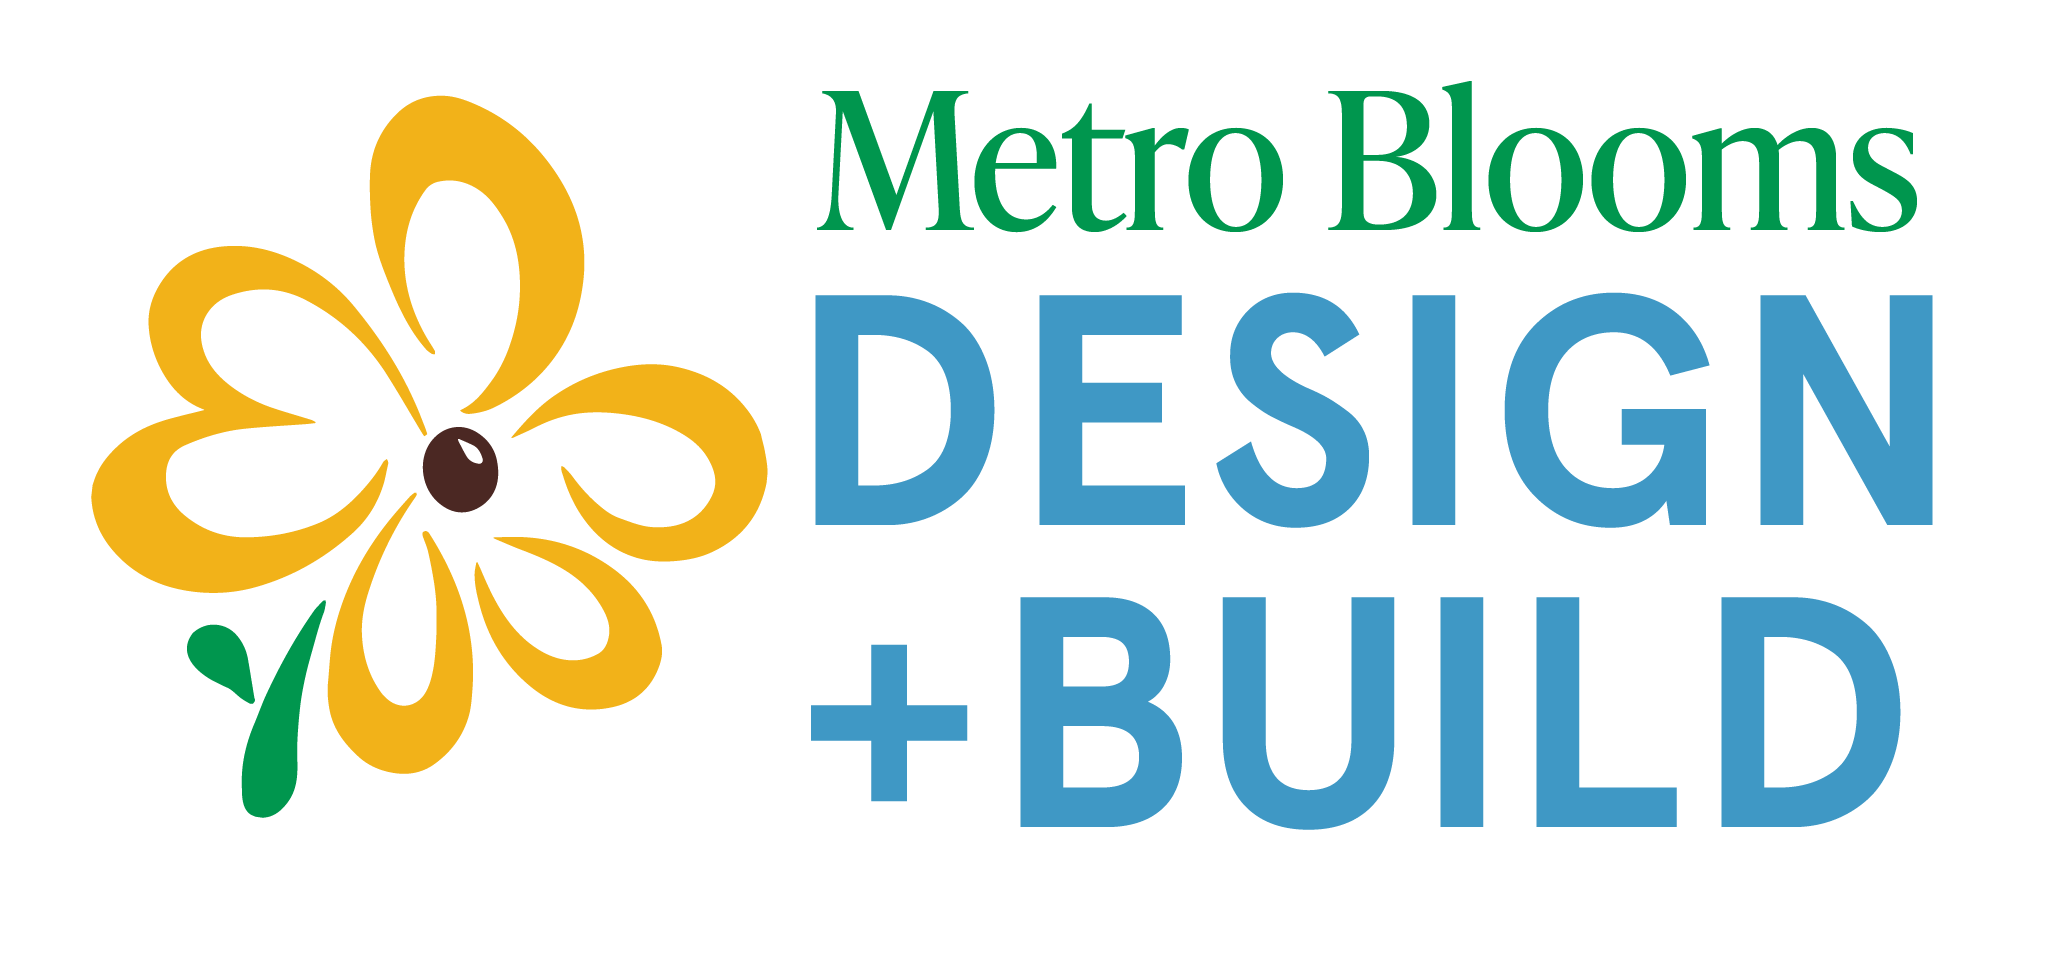 Metro Blooms Design + Build